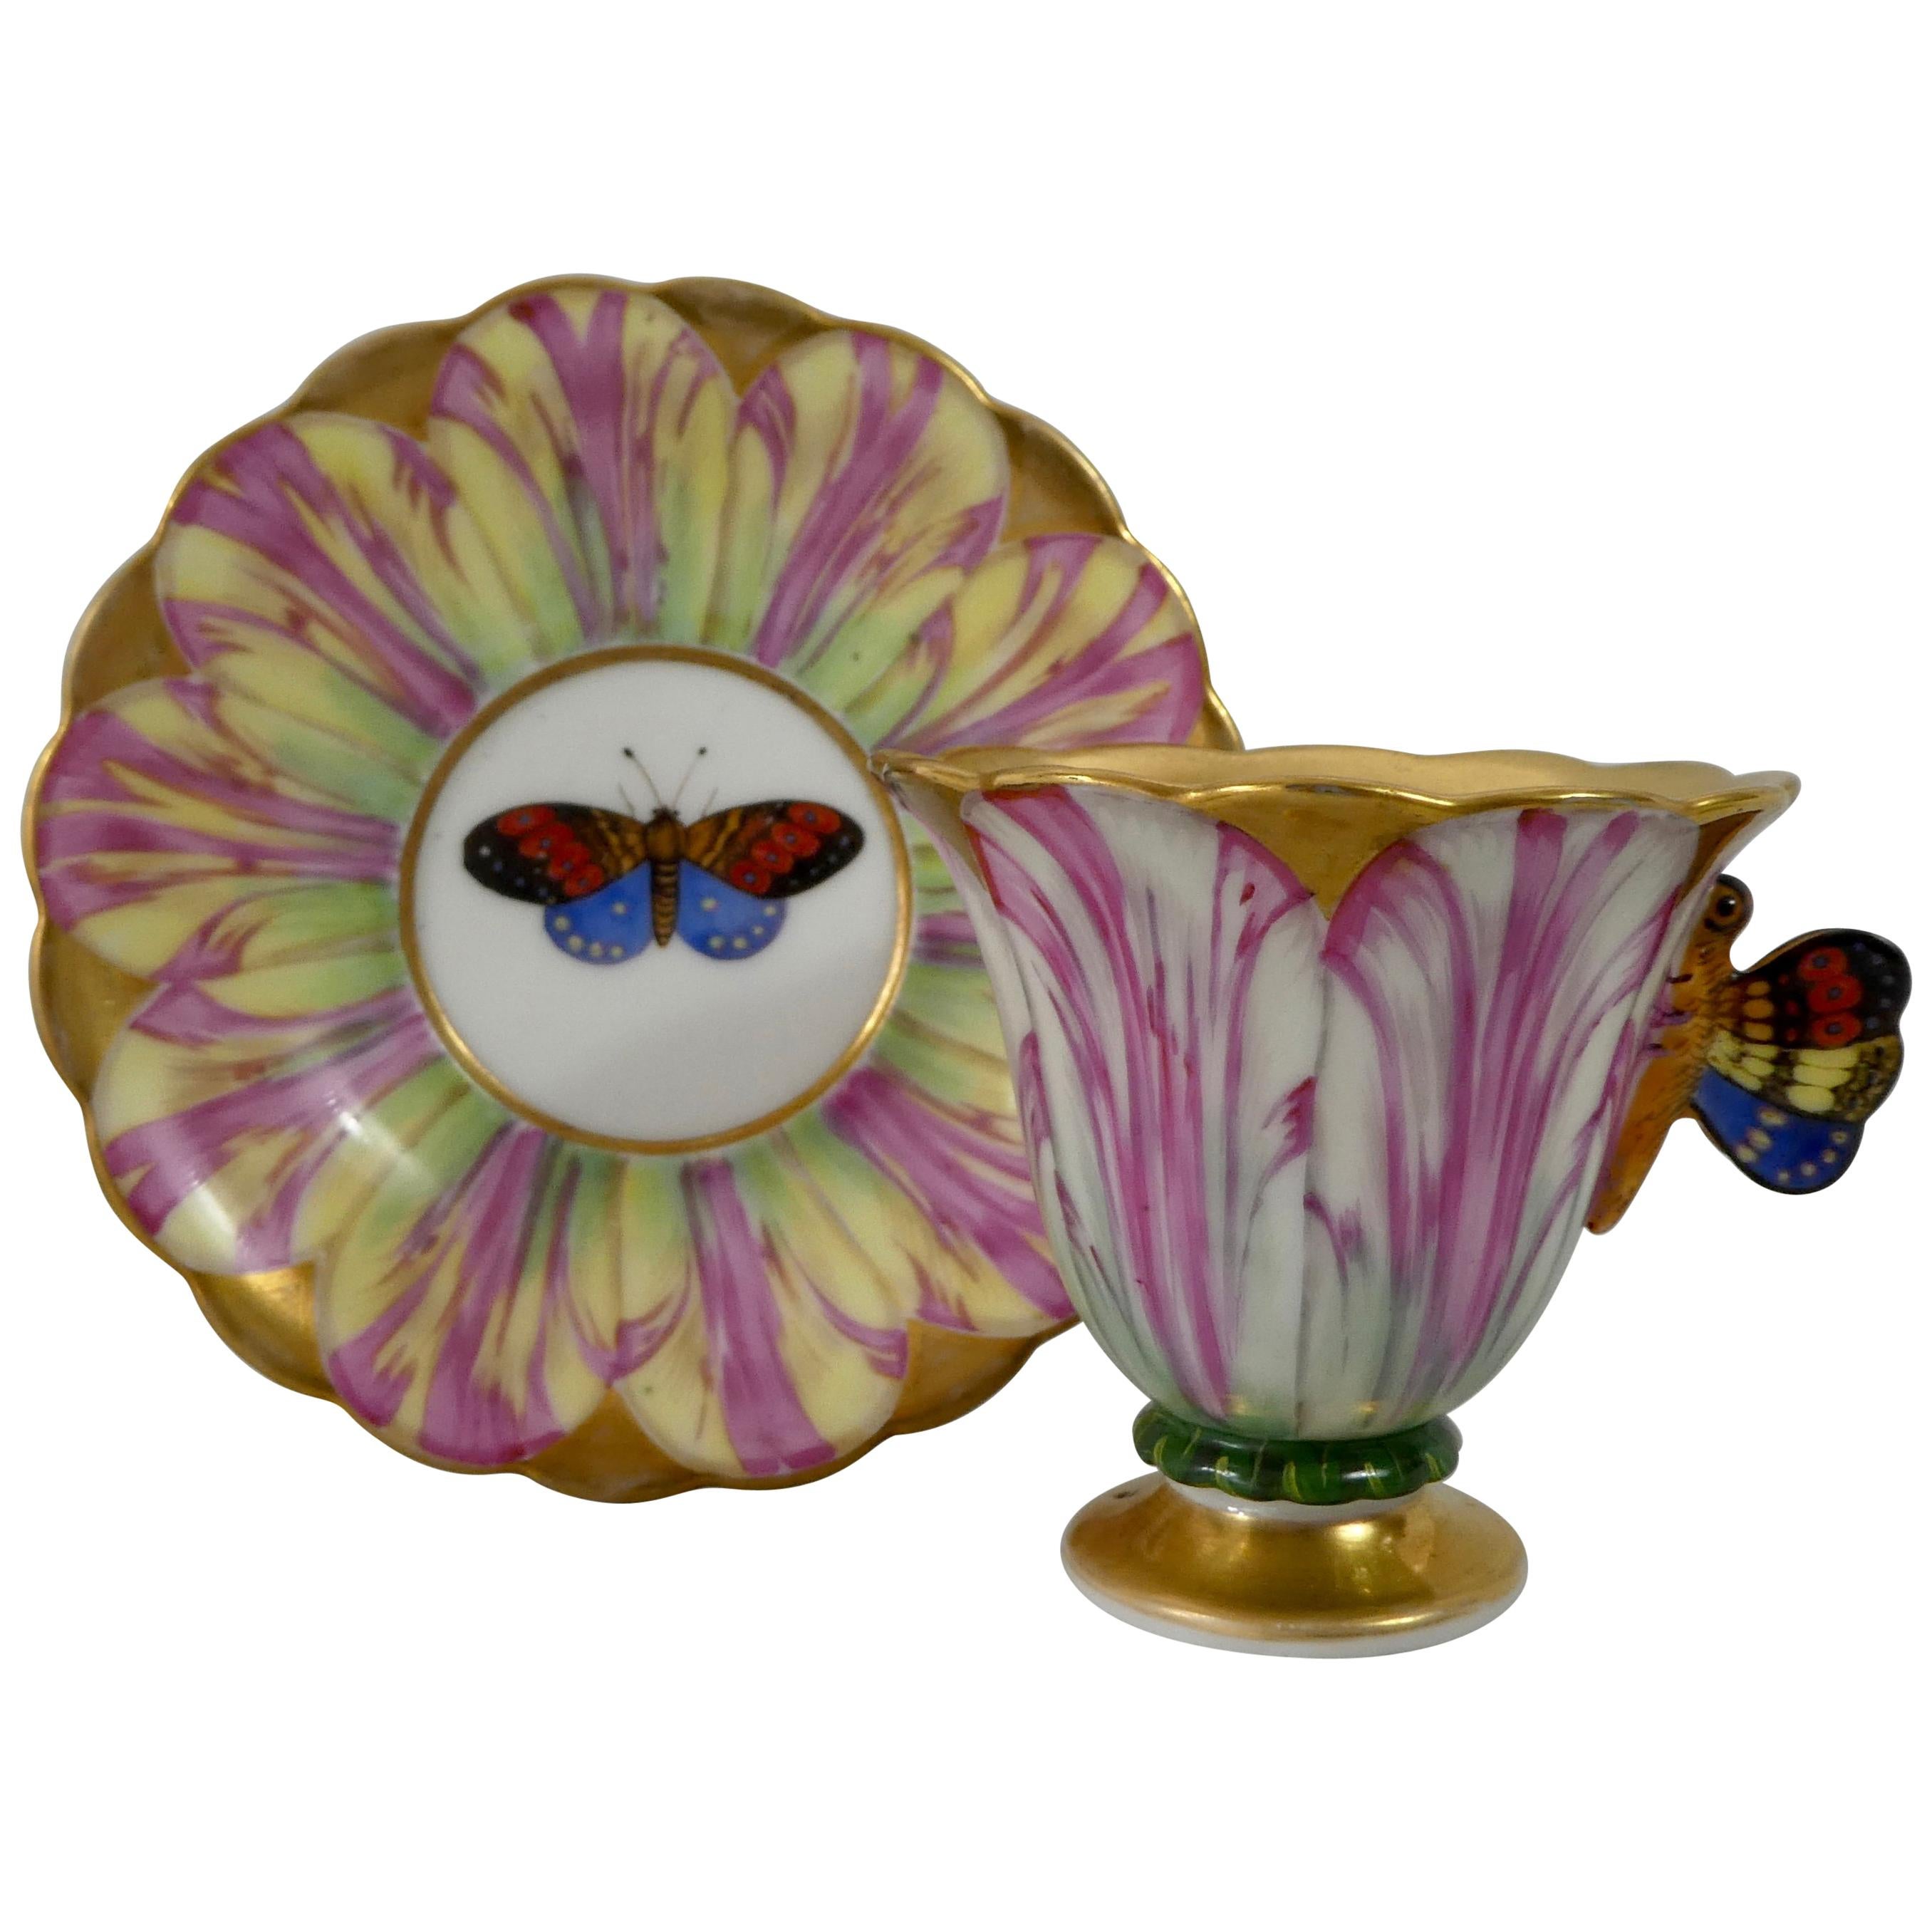 Spode Porcelain Tulip Cup and Saucer, circa 1820